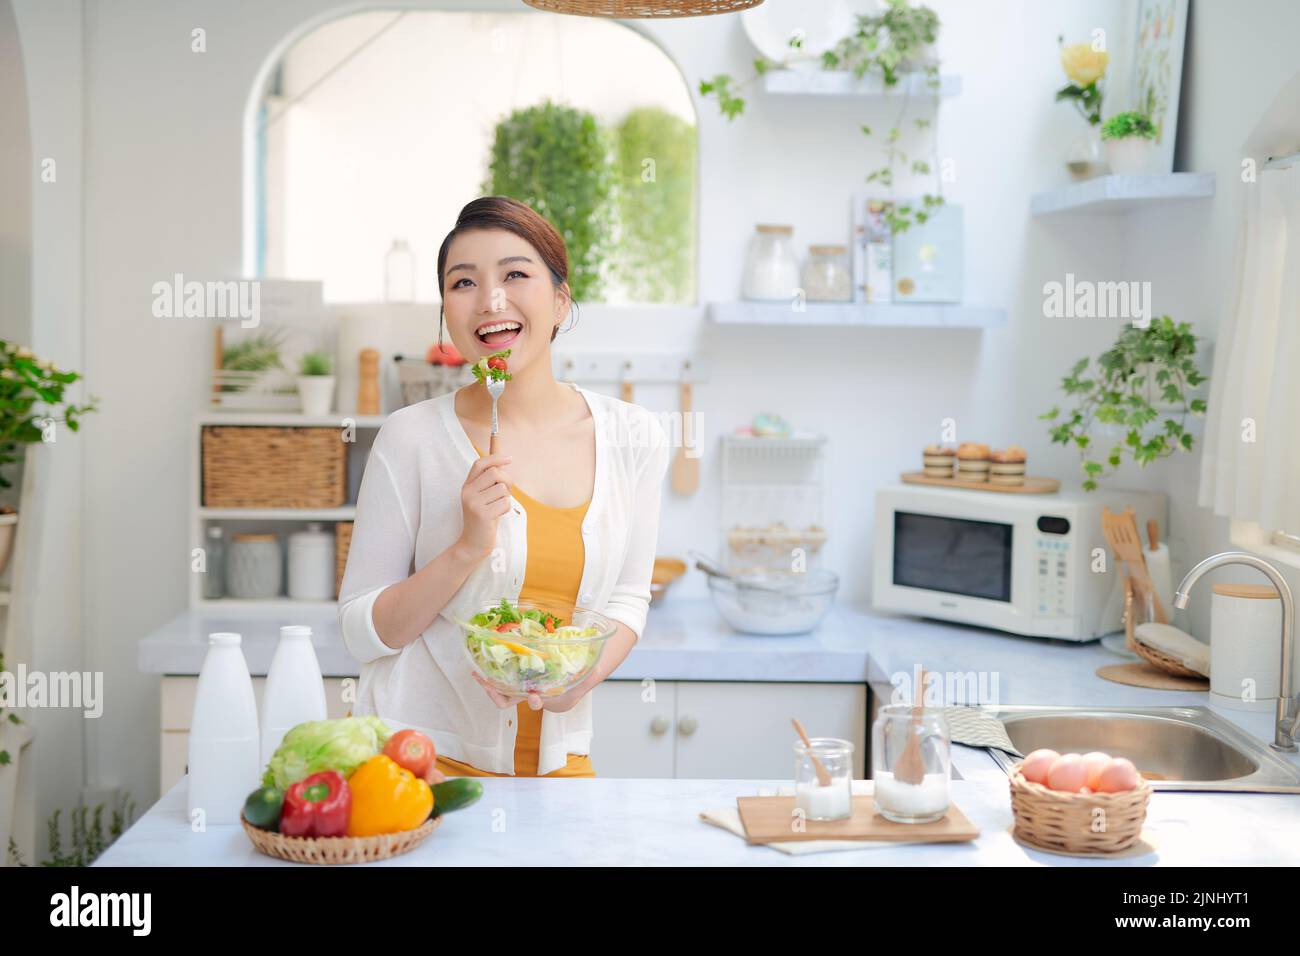 Close Up retrato de linda chica comer ensalada en la cocina Foto de stock